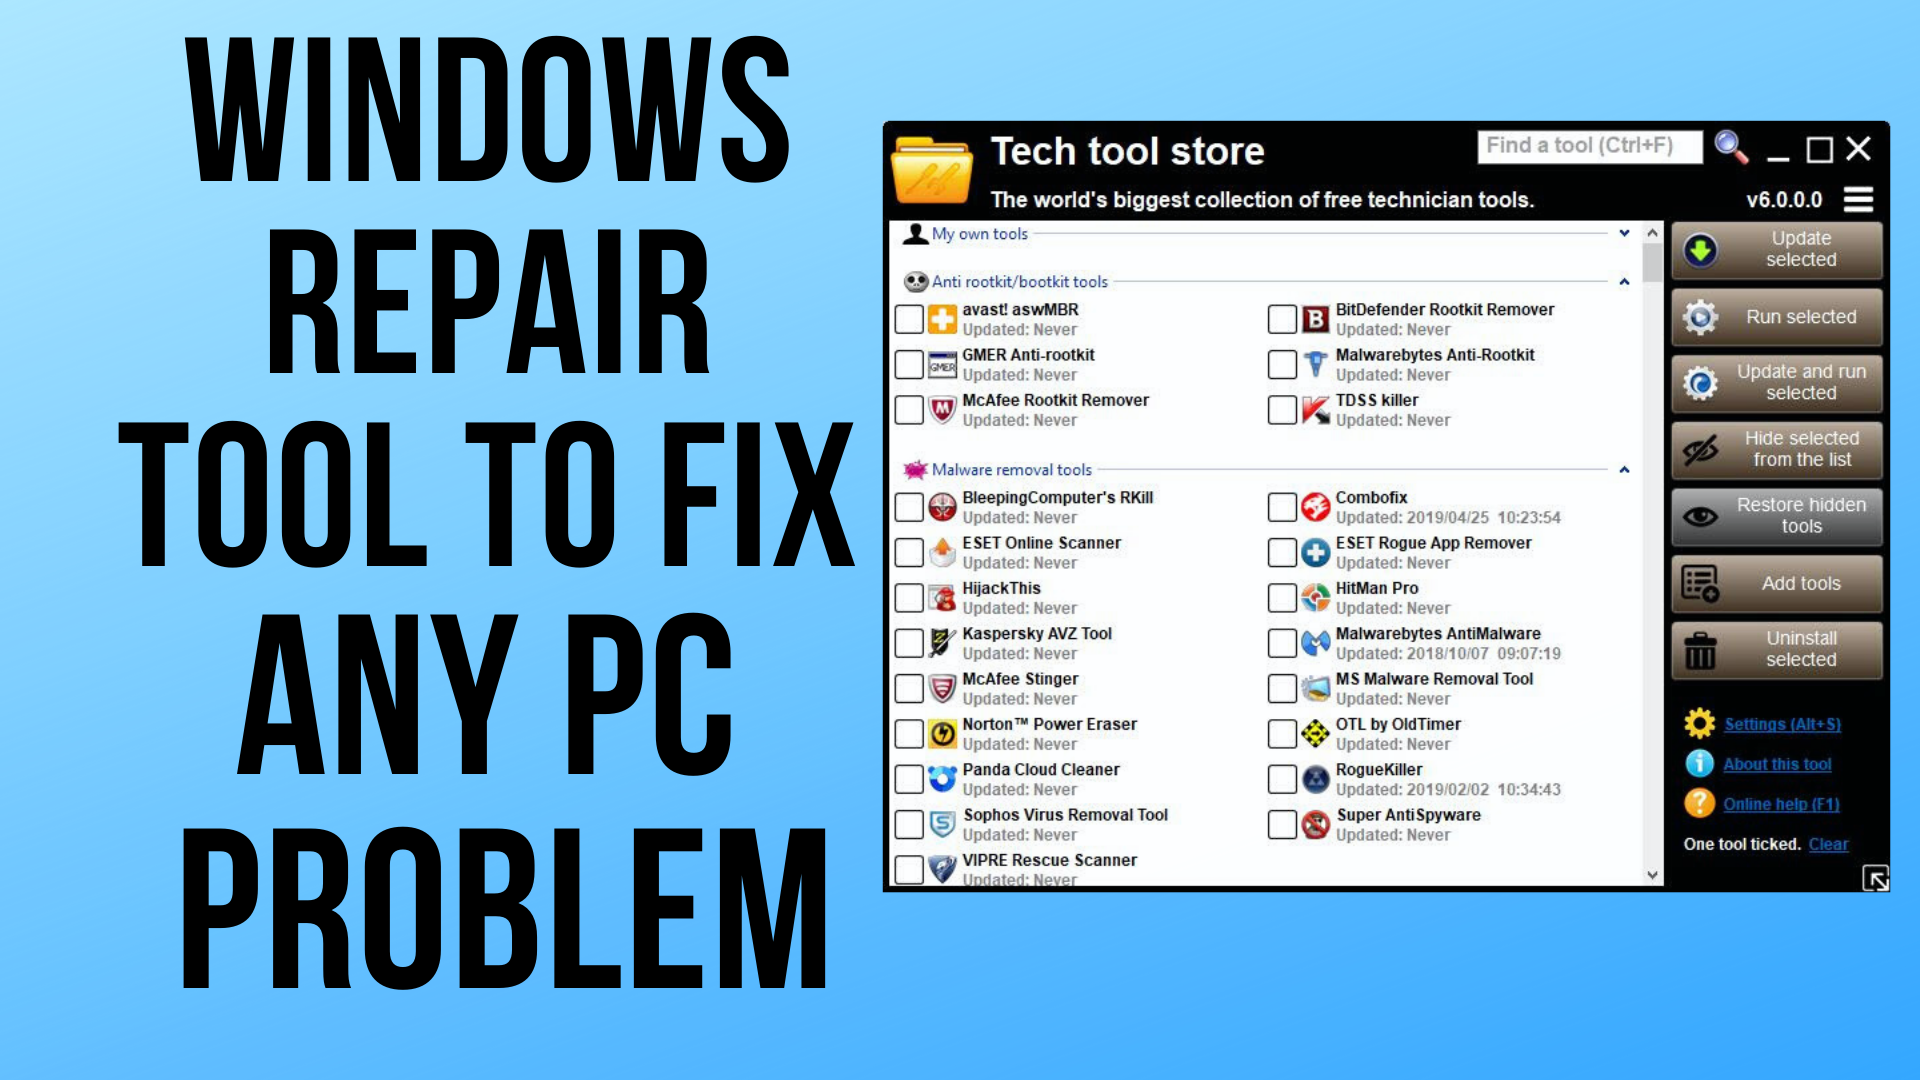 windows repair toolbox download